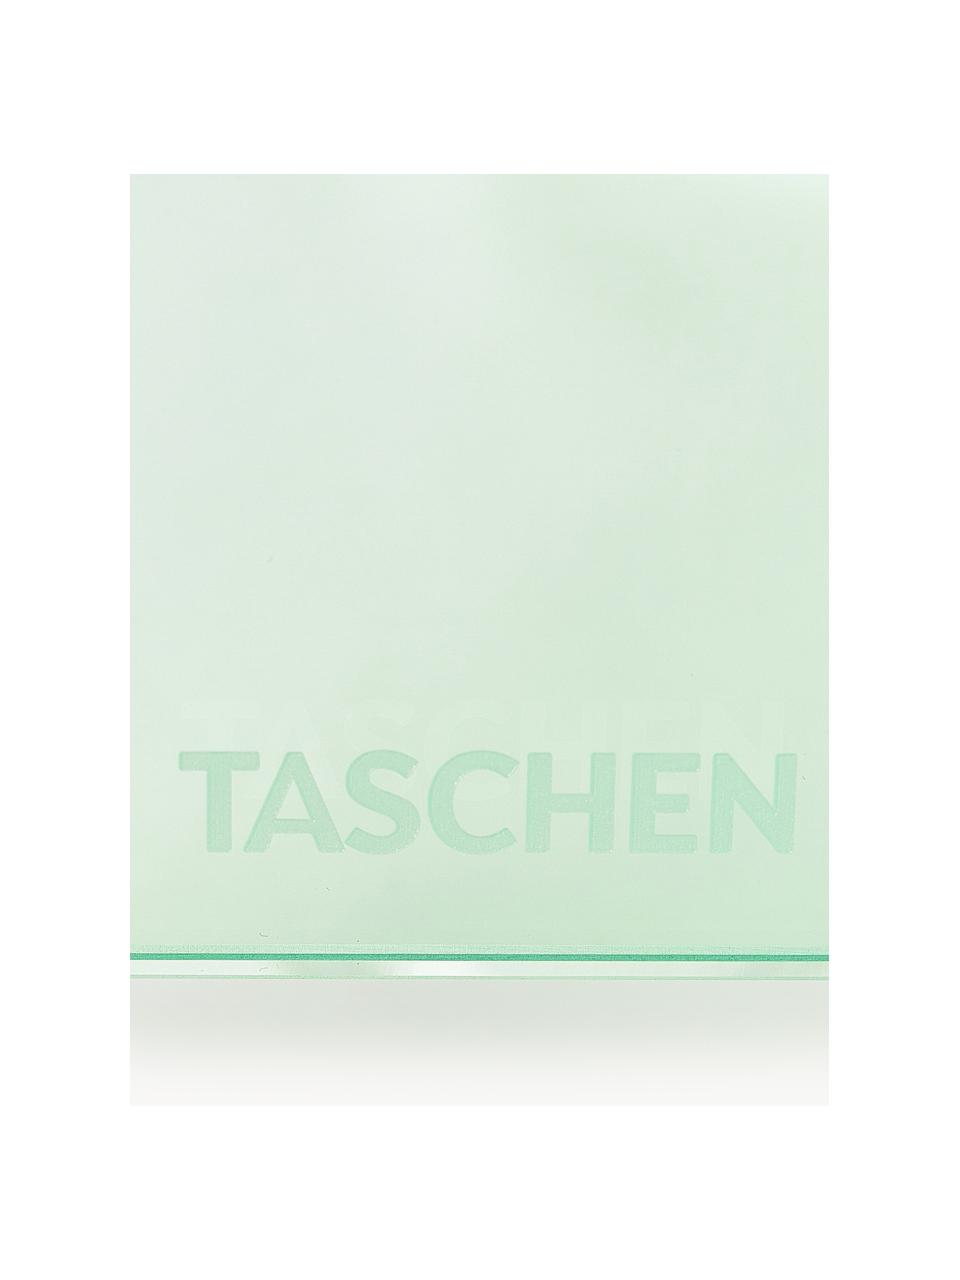 Stojak na książki Crystal, S 36 x W 34 cm, Szkło akrylowe, Jasny zielony, transparentny, S 36 x W 34 cm